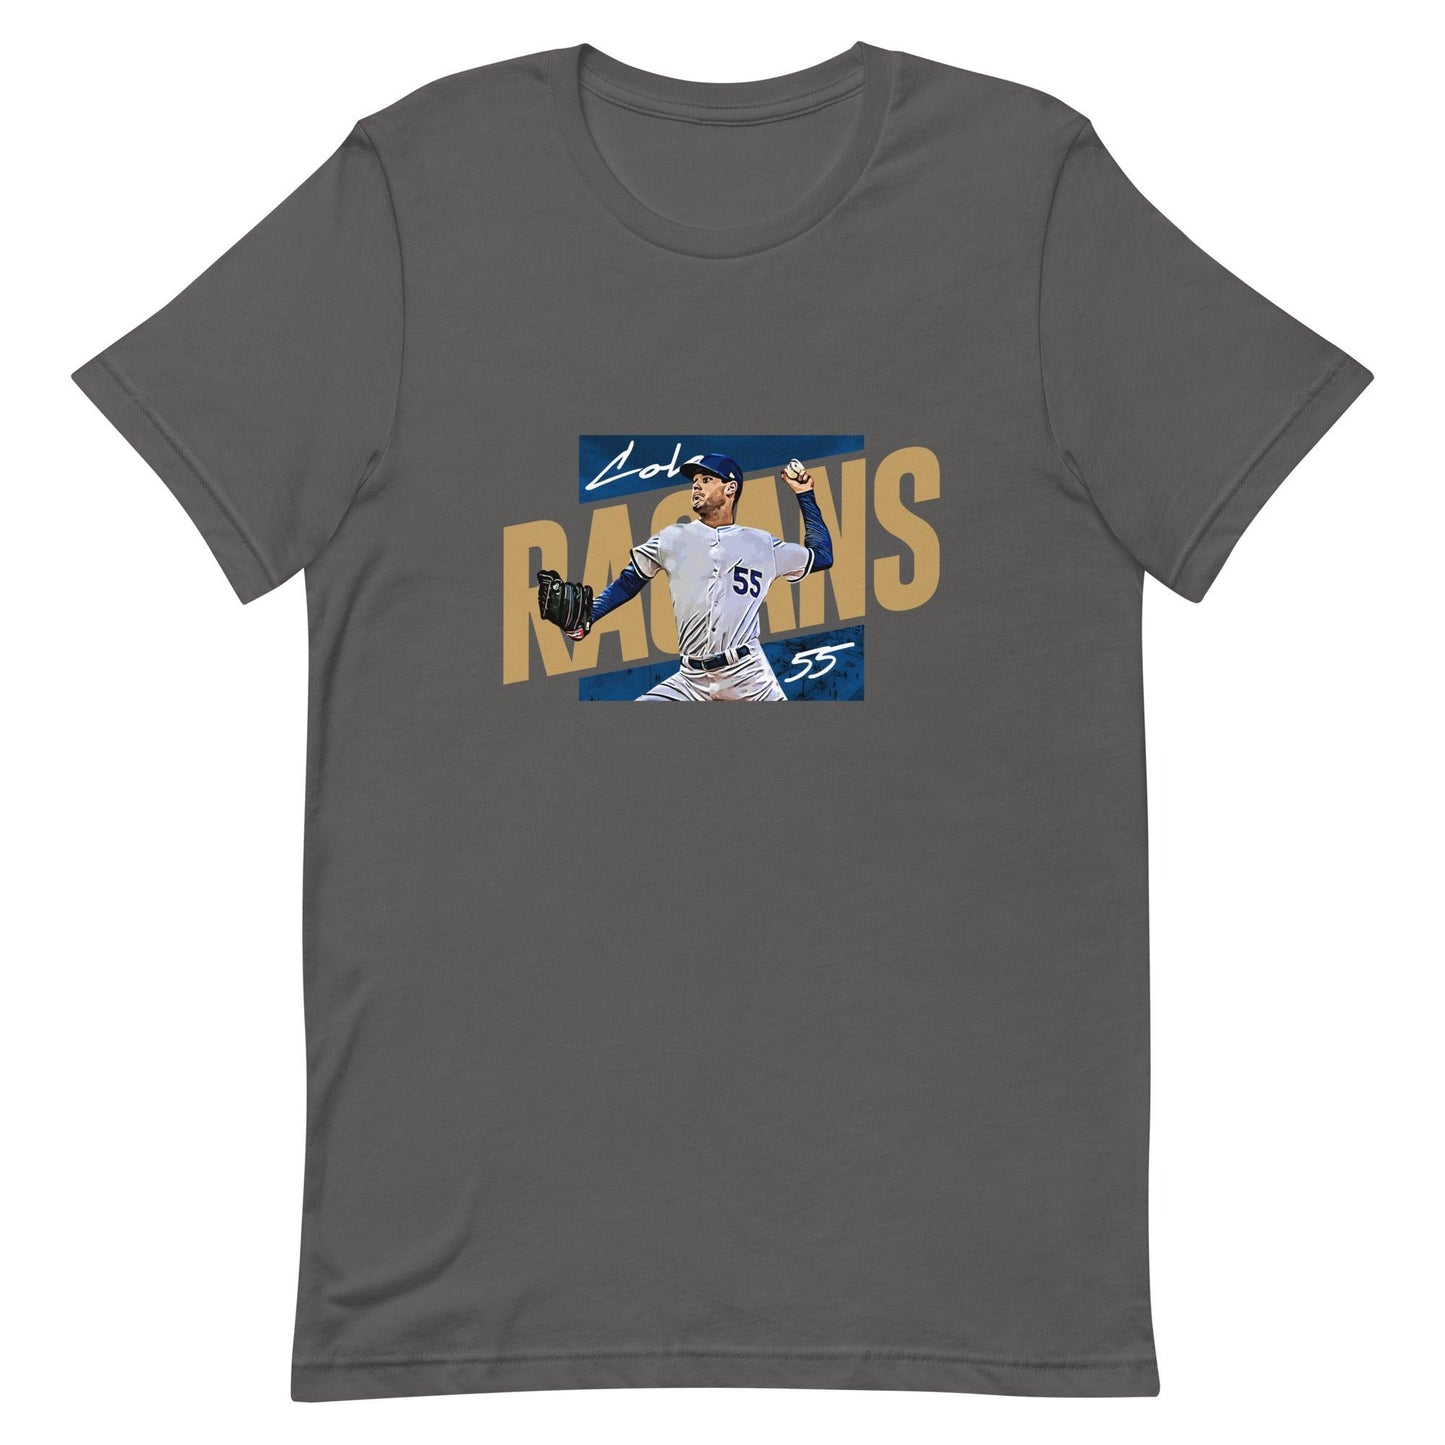 Cole Ragans "Gameday" t-shirt - Fan Arch